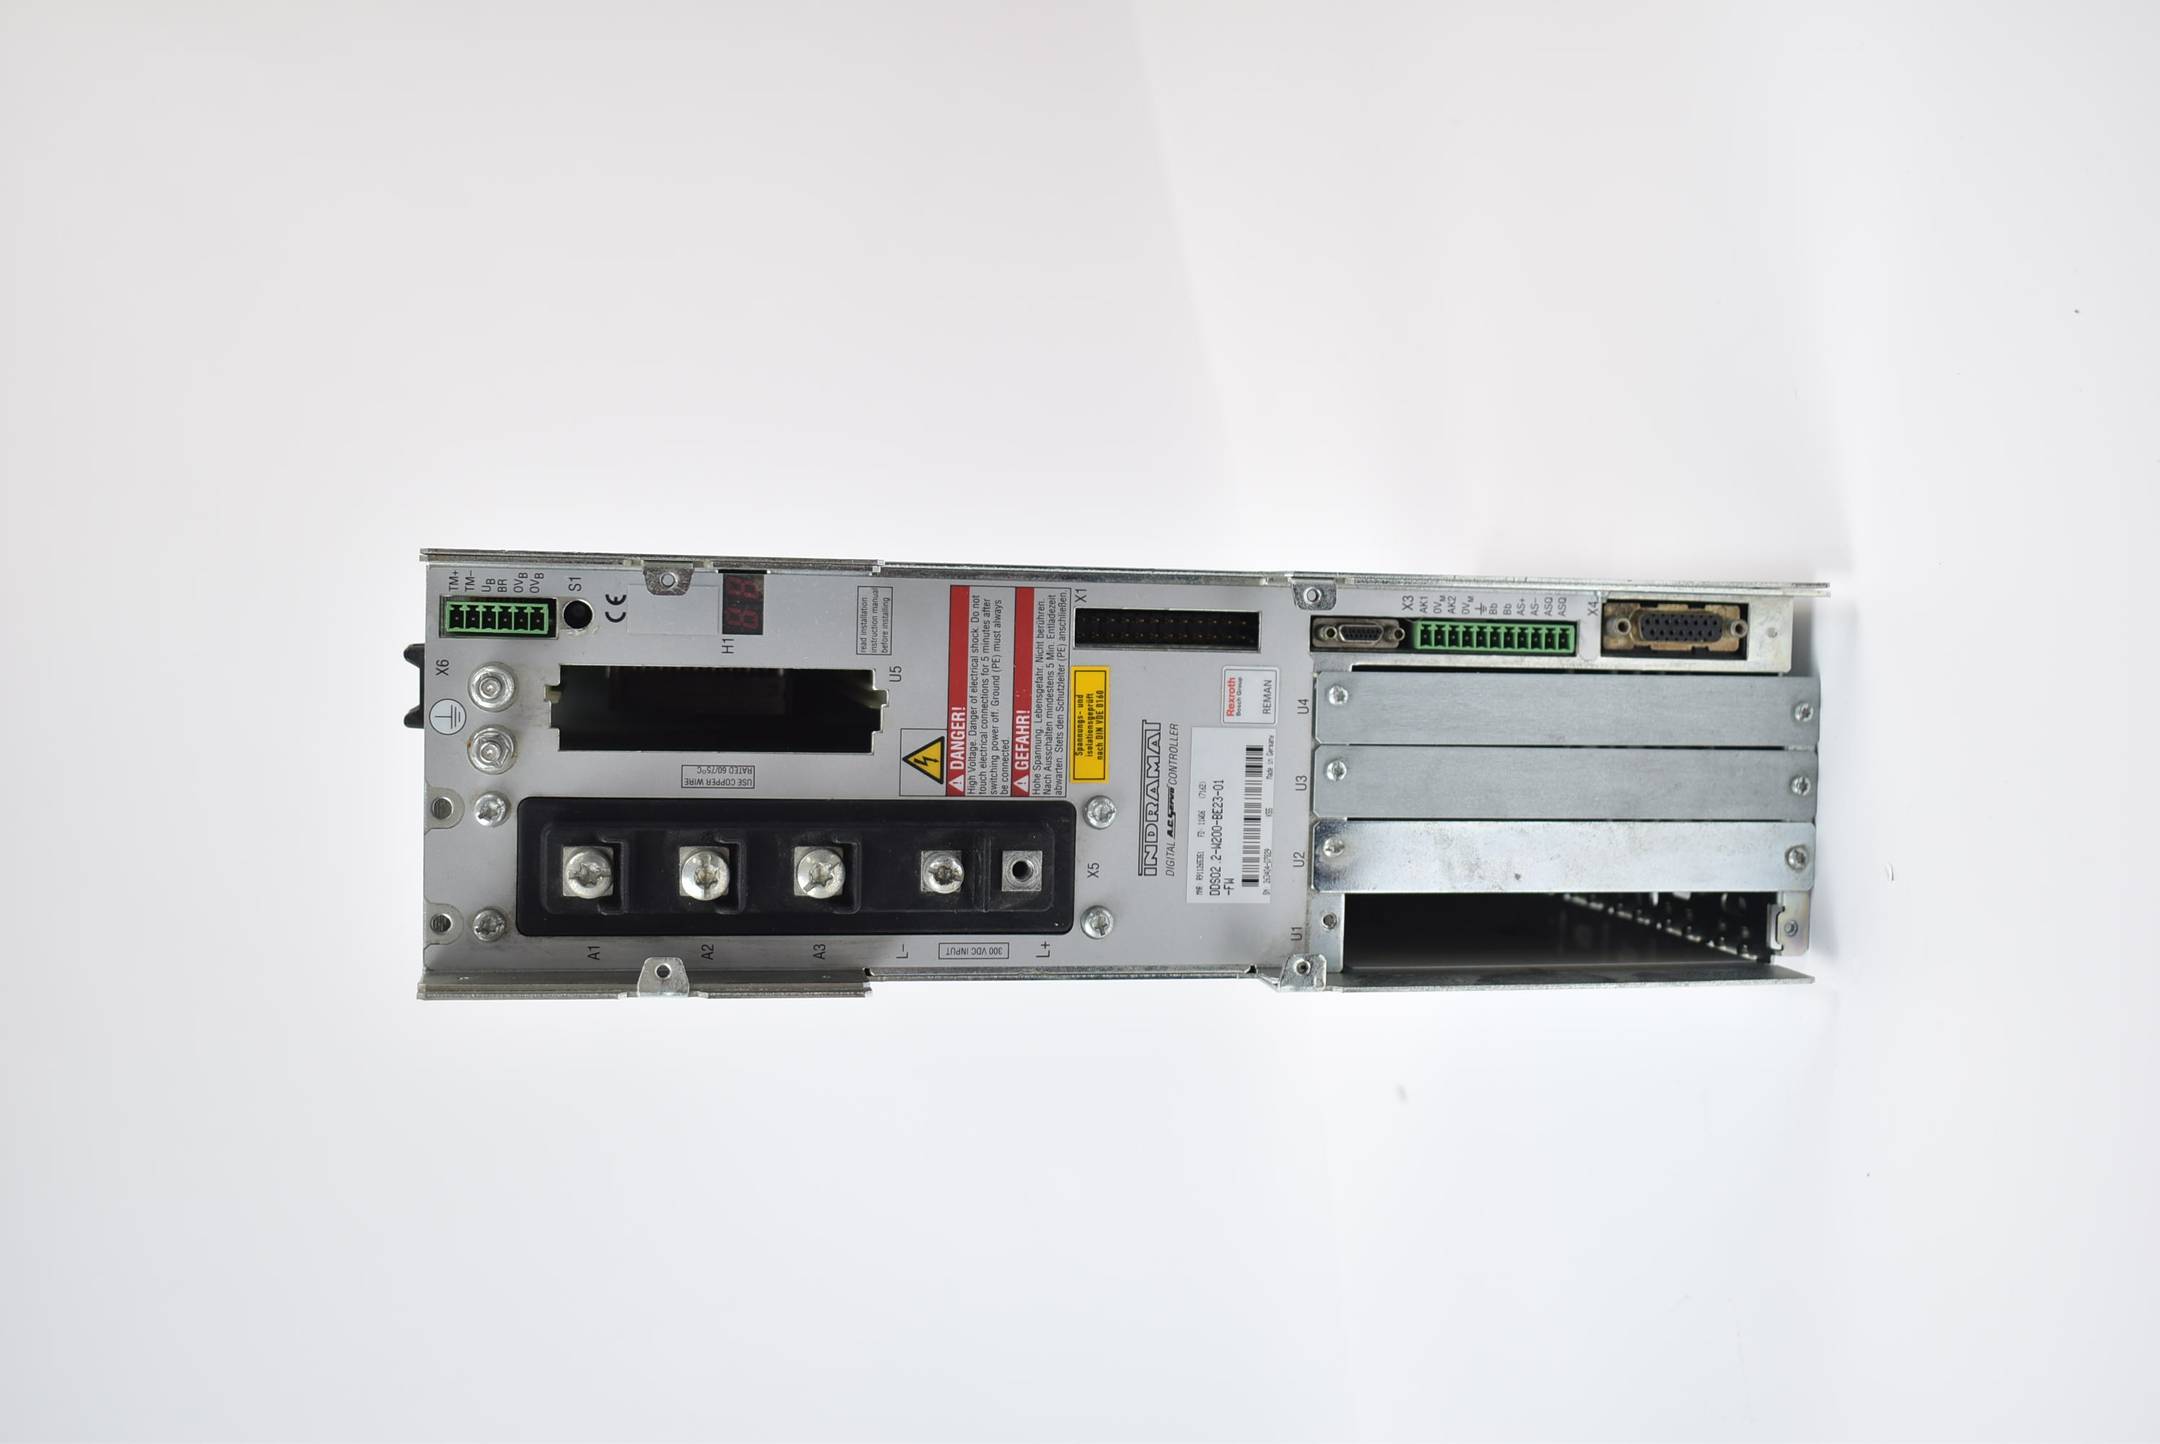 Indramat Servo Controller DDS02.2-W200-BE23-01 ( R911265351 ) 